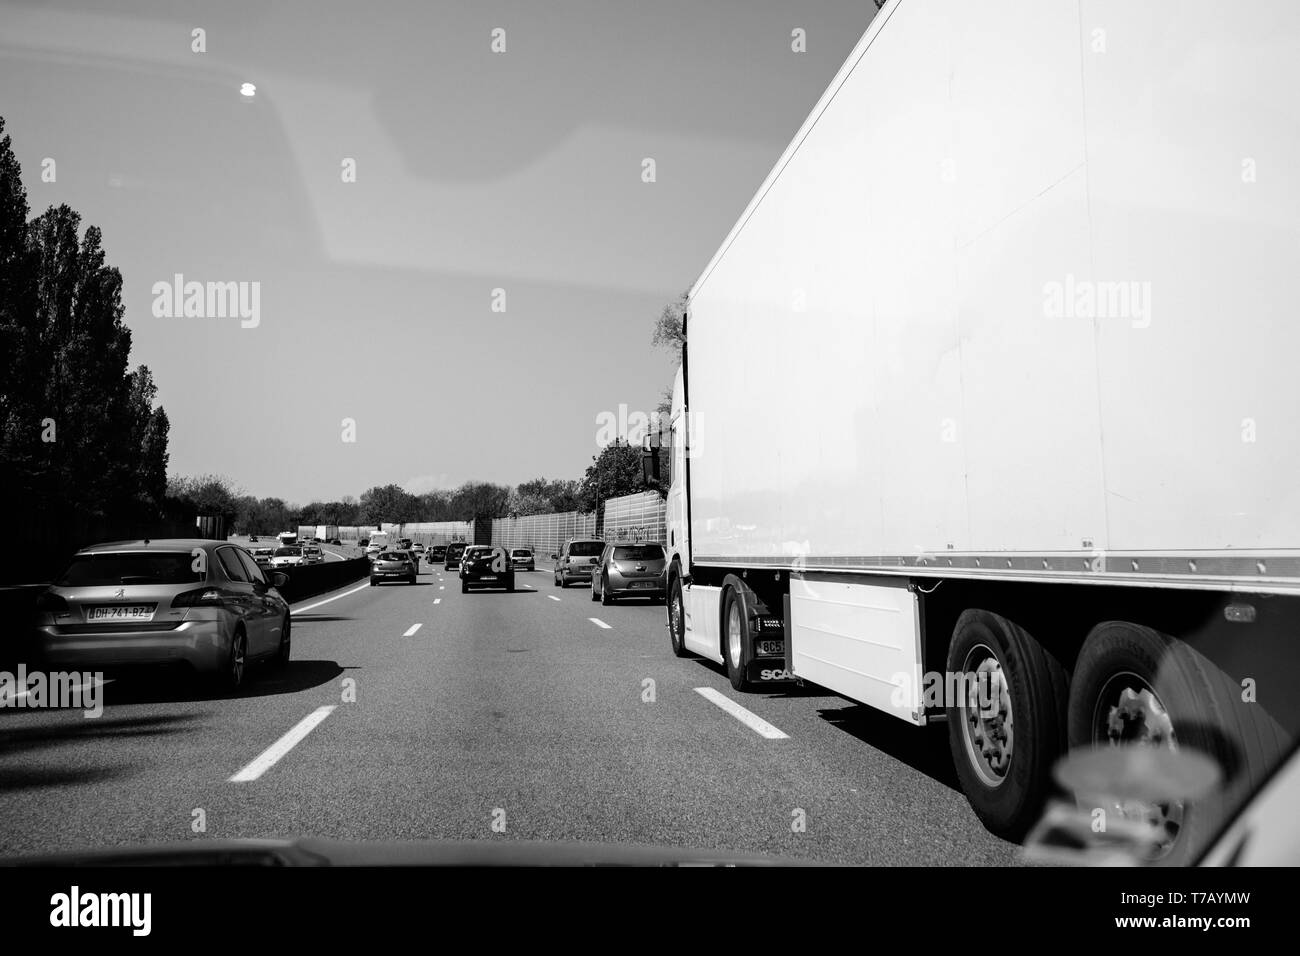 Frankreich - Apr 19, 2019: Schwarz und Weiß moderater Verkehr auf der französischen Autobahn Perspektive am langen Autobahn mit Pkw, Lkw und SUV Stockfoto